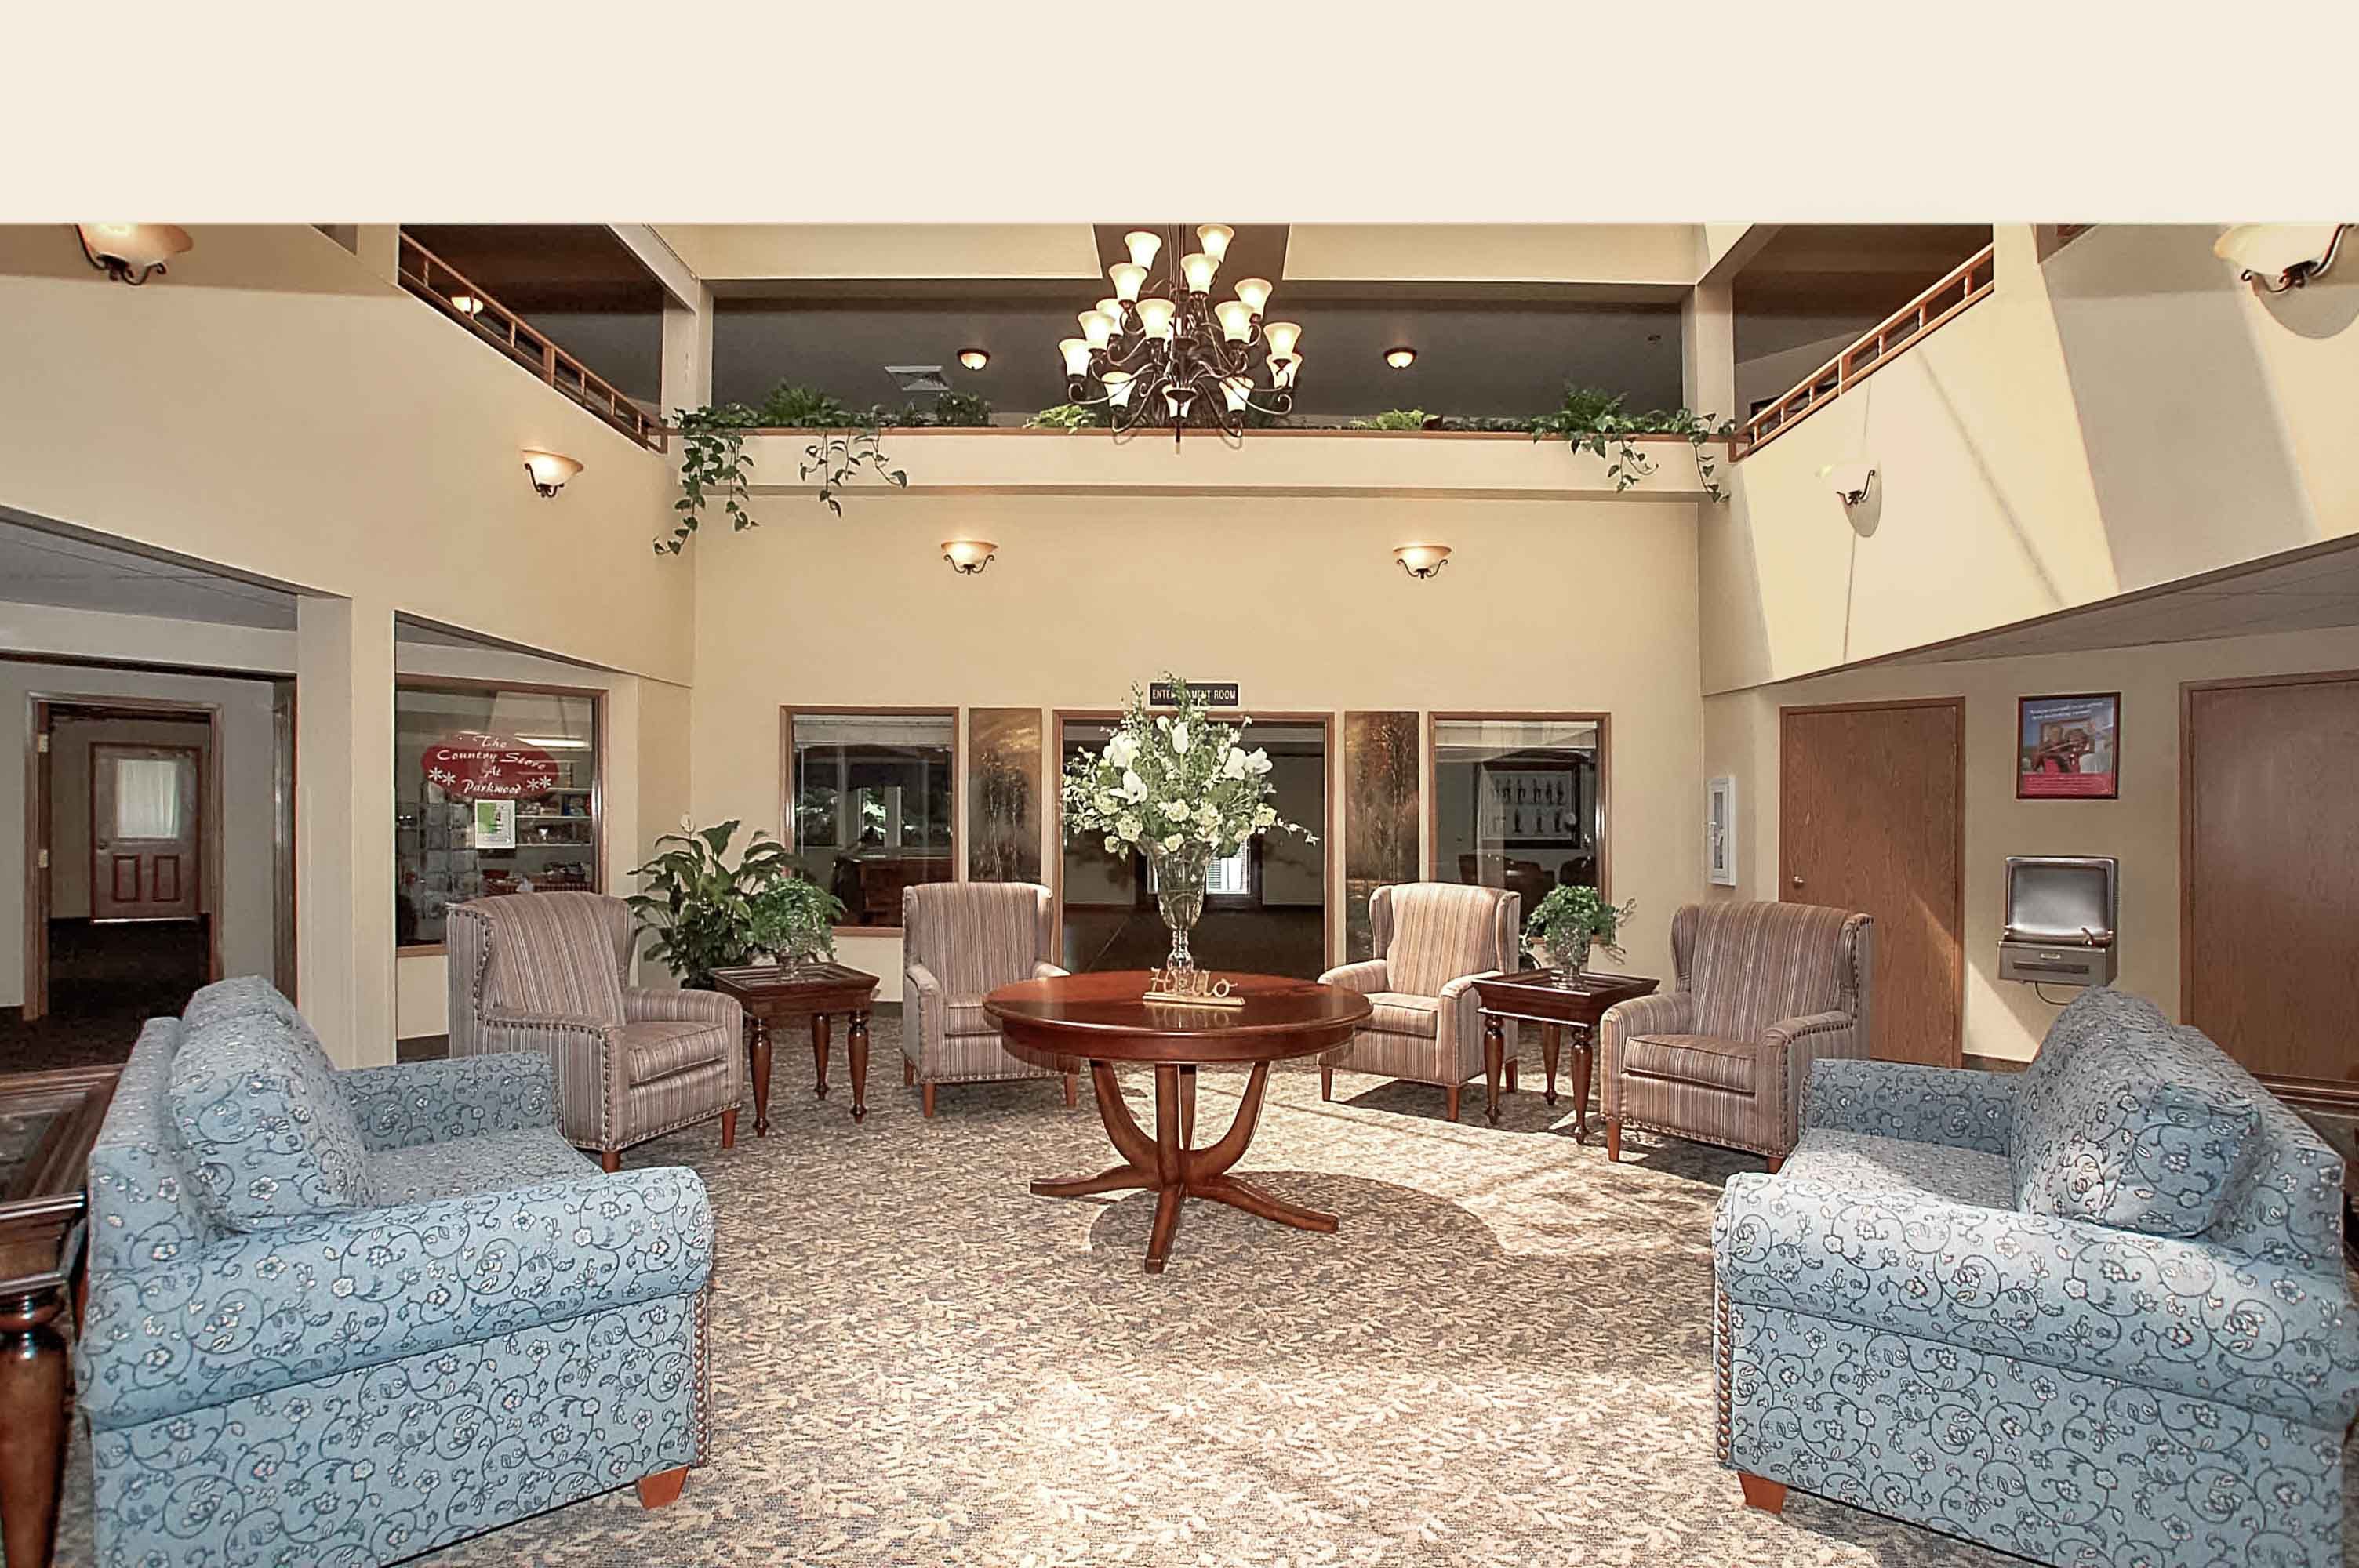 Senior living community reception room at Parkwood Estates with elegant furniture and chandelier.